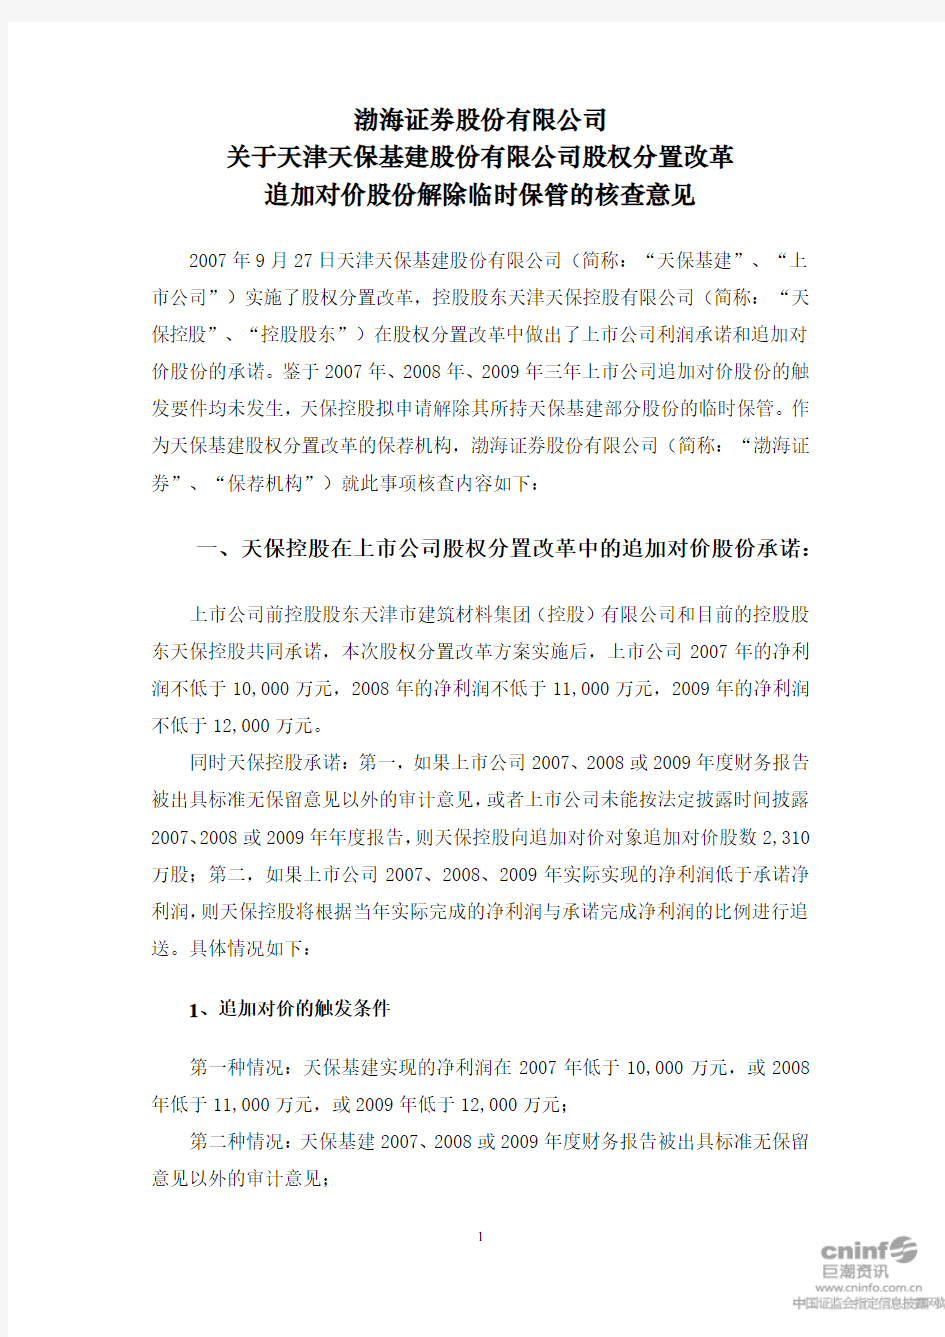 渤海证券股份有限公司关于天津天保基建股份有限公司股权分置改革追加对价股份解除临时保管的核查意见